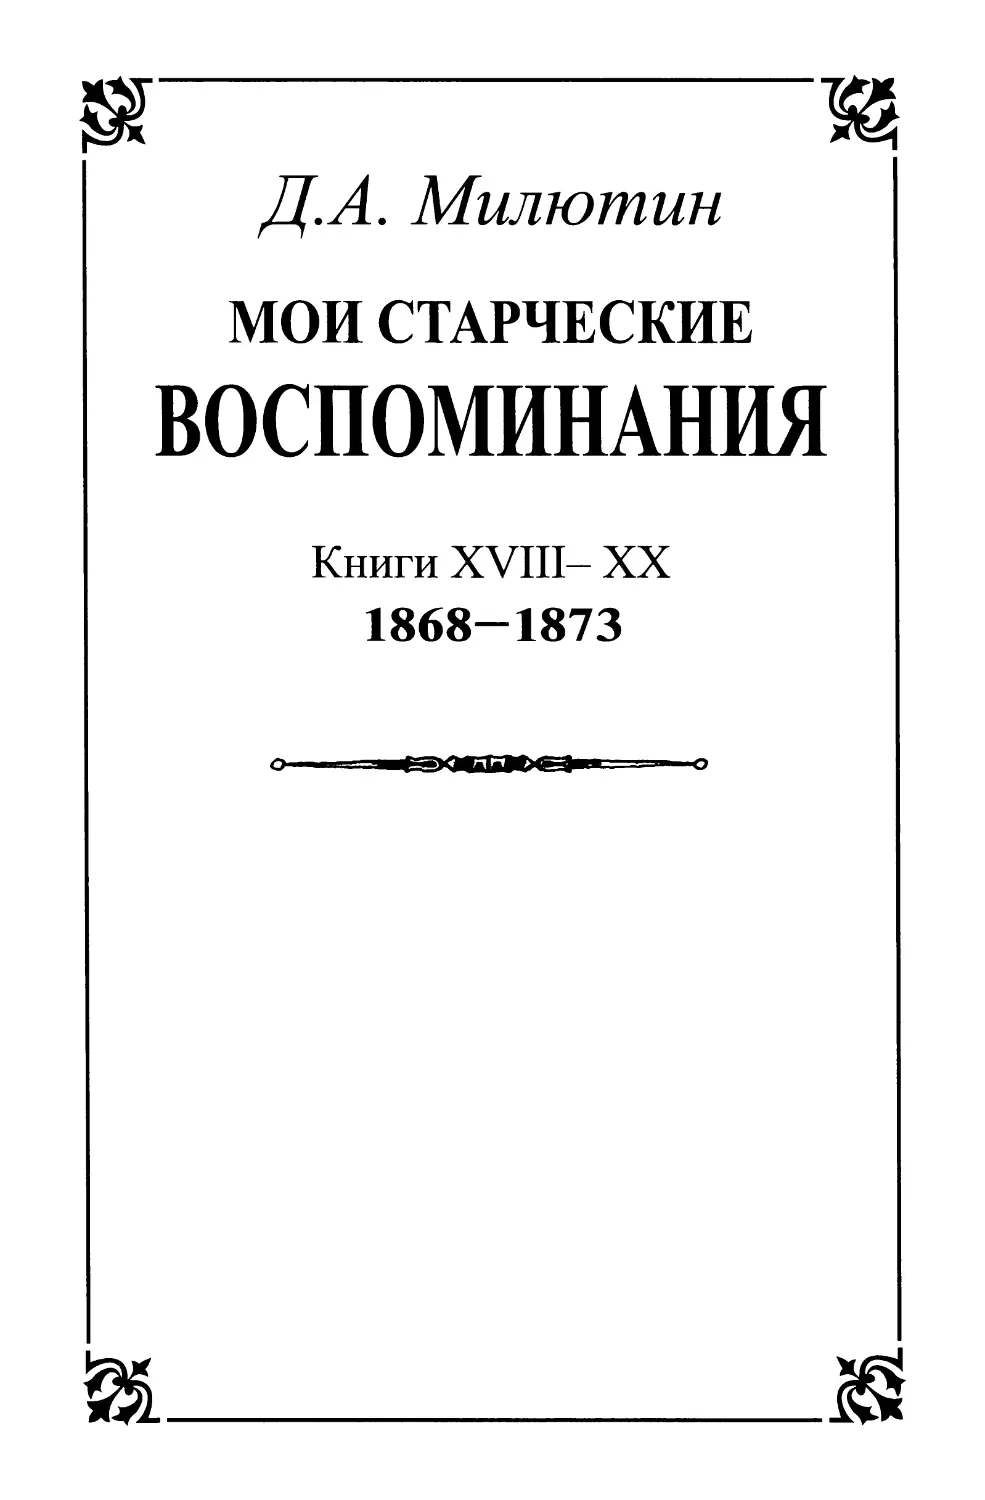 Мои старческие воспоминания. Книги XVIII-XX 1868 — начало 1873